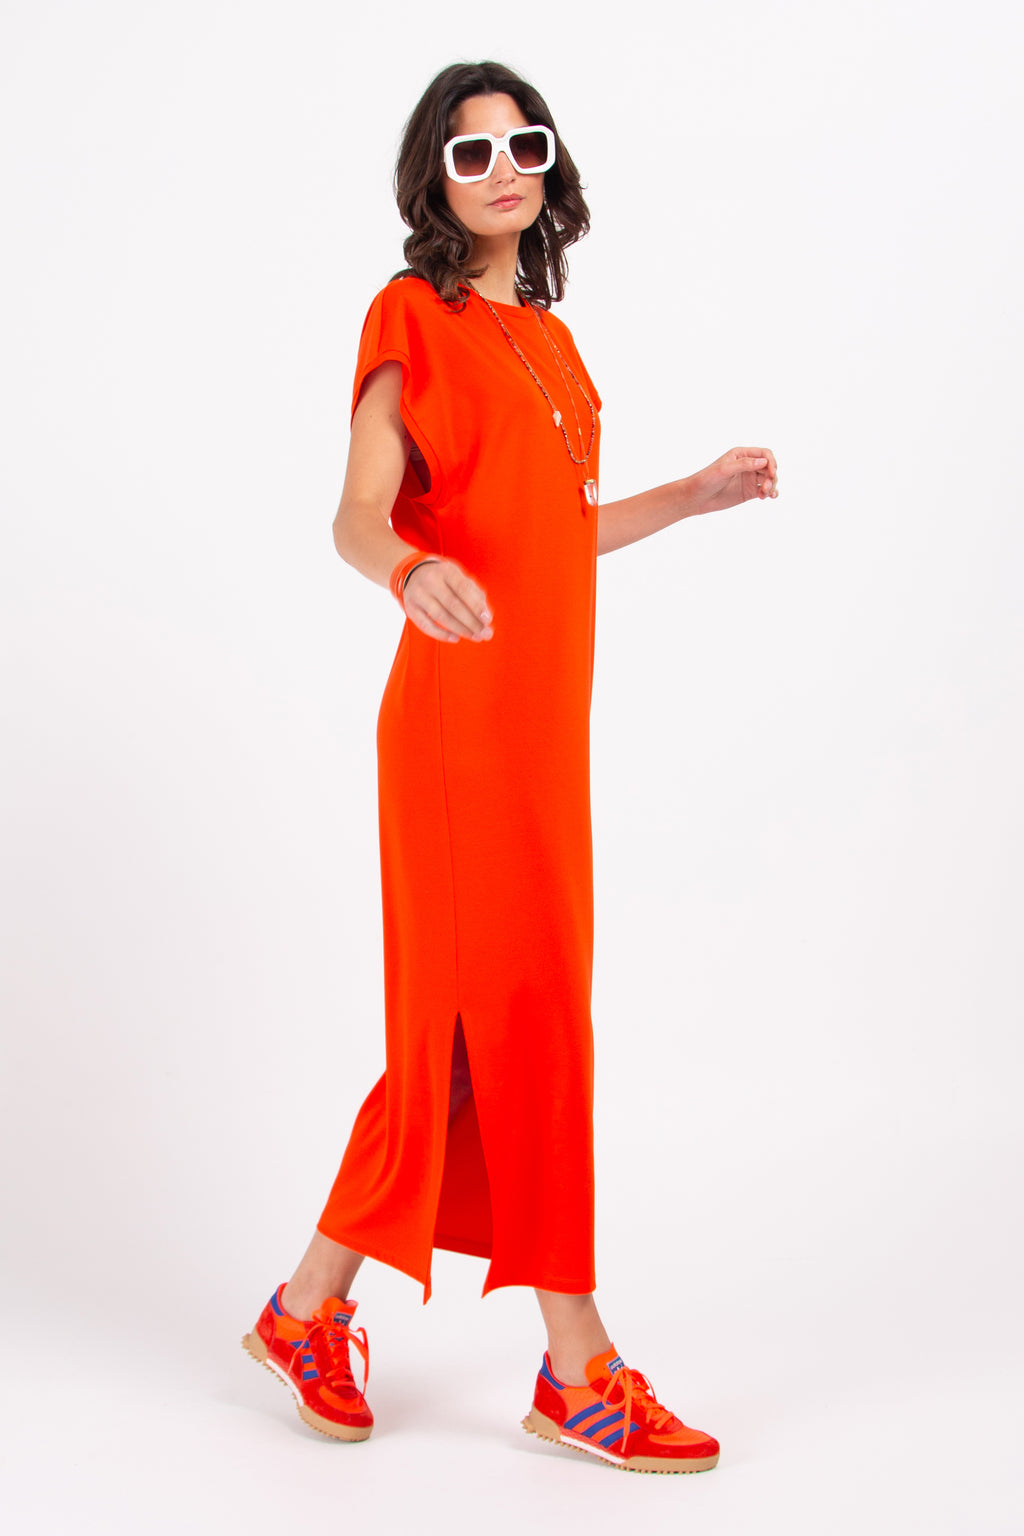 Denise spicy orange long jersey dress